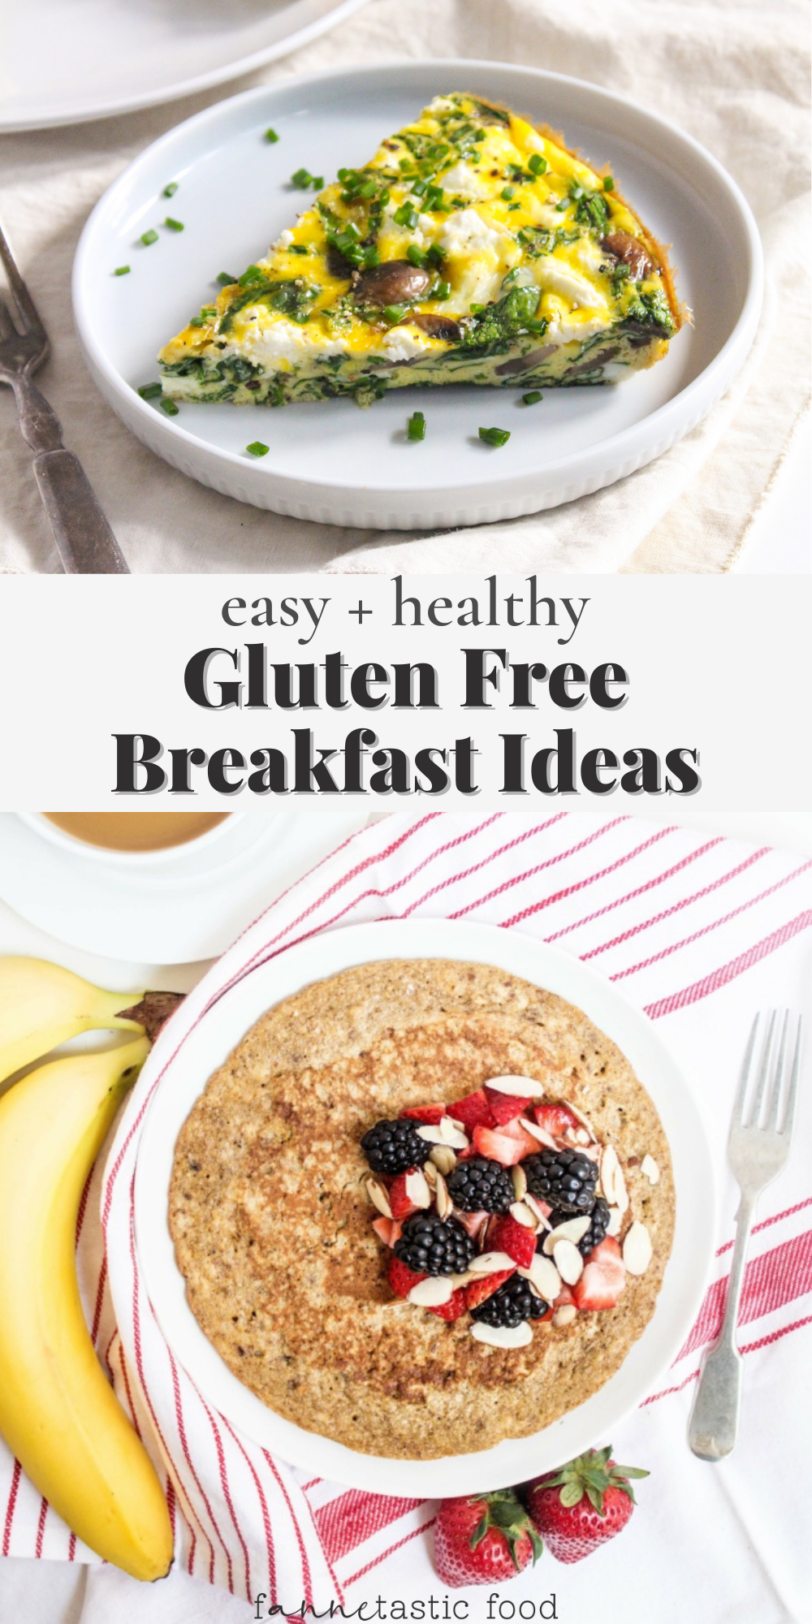 20+ Gluten Free Breakfast Ideas - fANNEtastic food